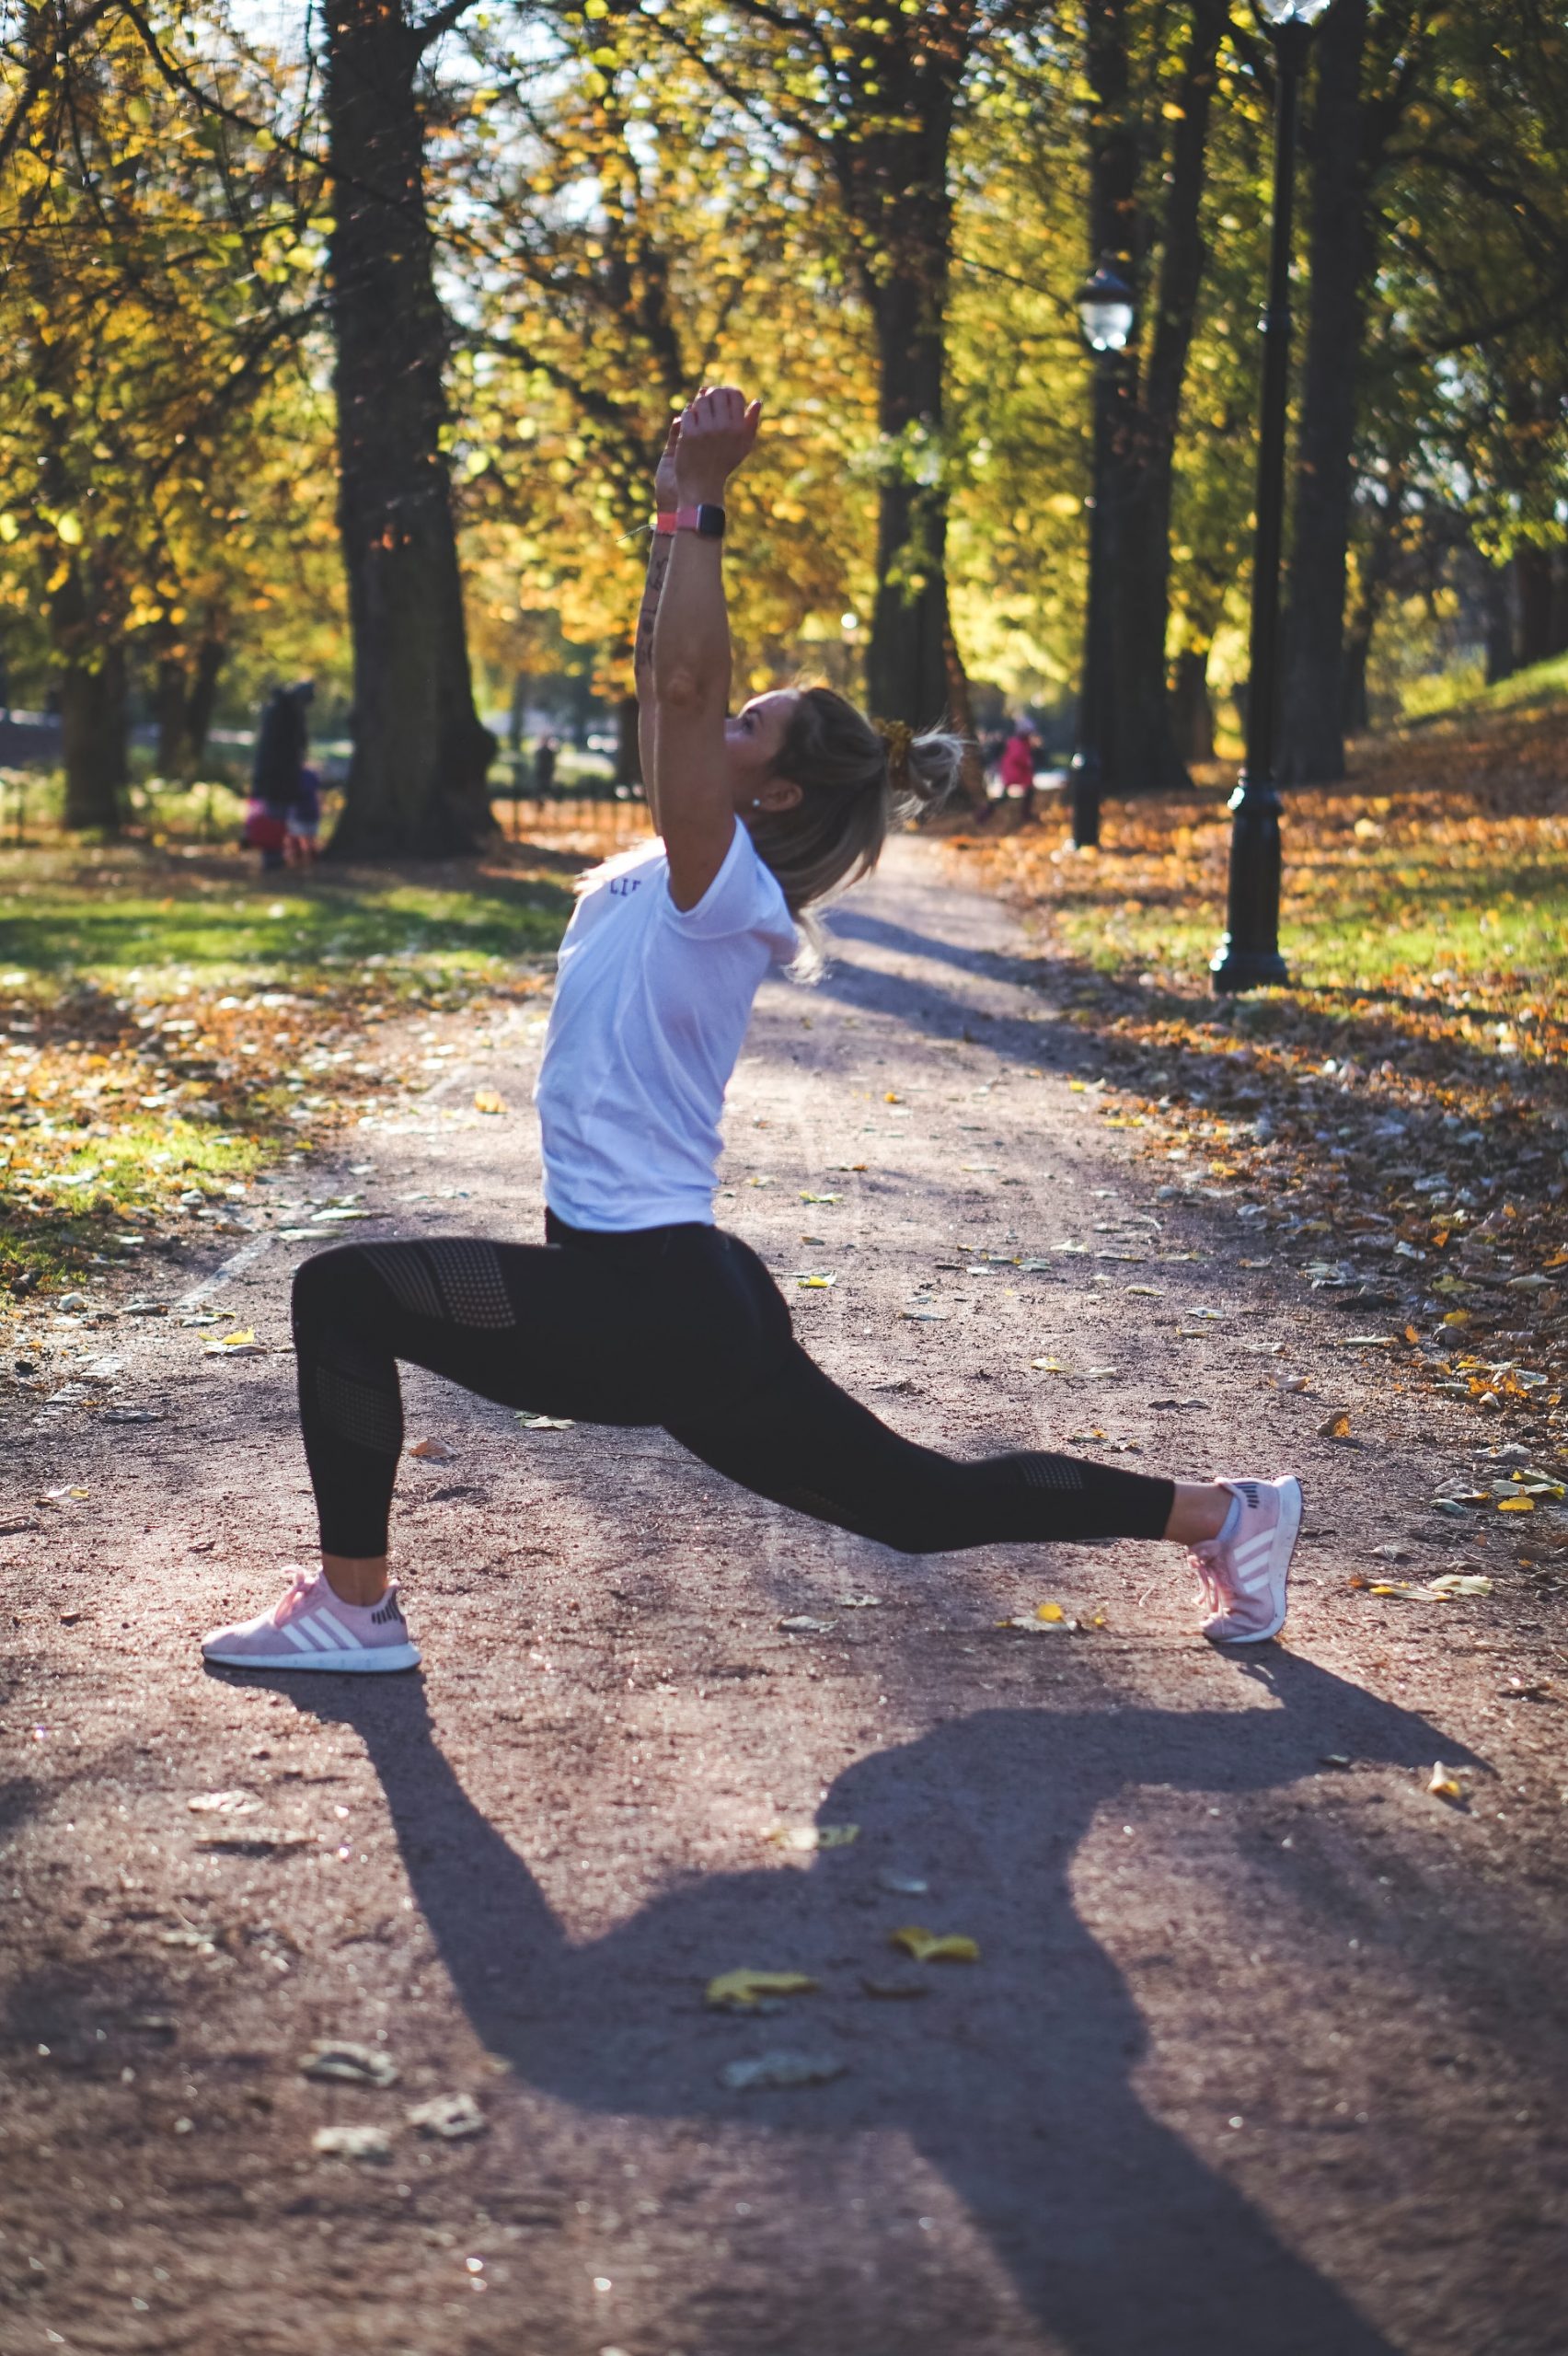 Allenamento percorso vita: gli esercizi per tenersi in forma al parco